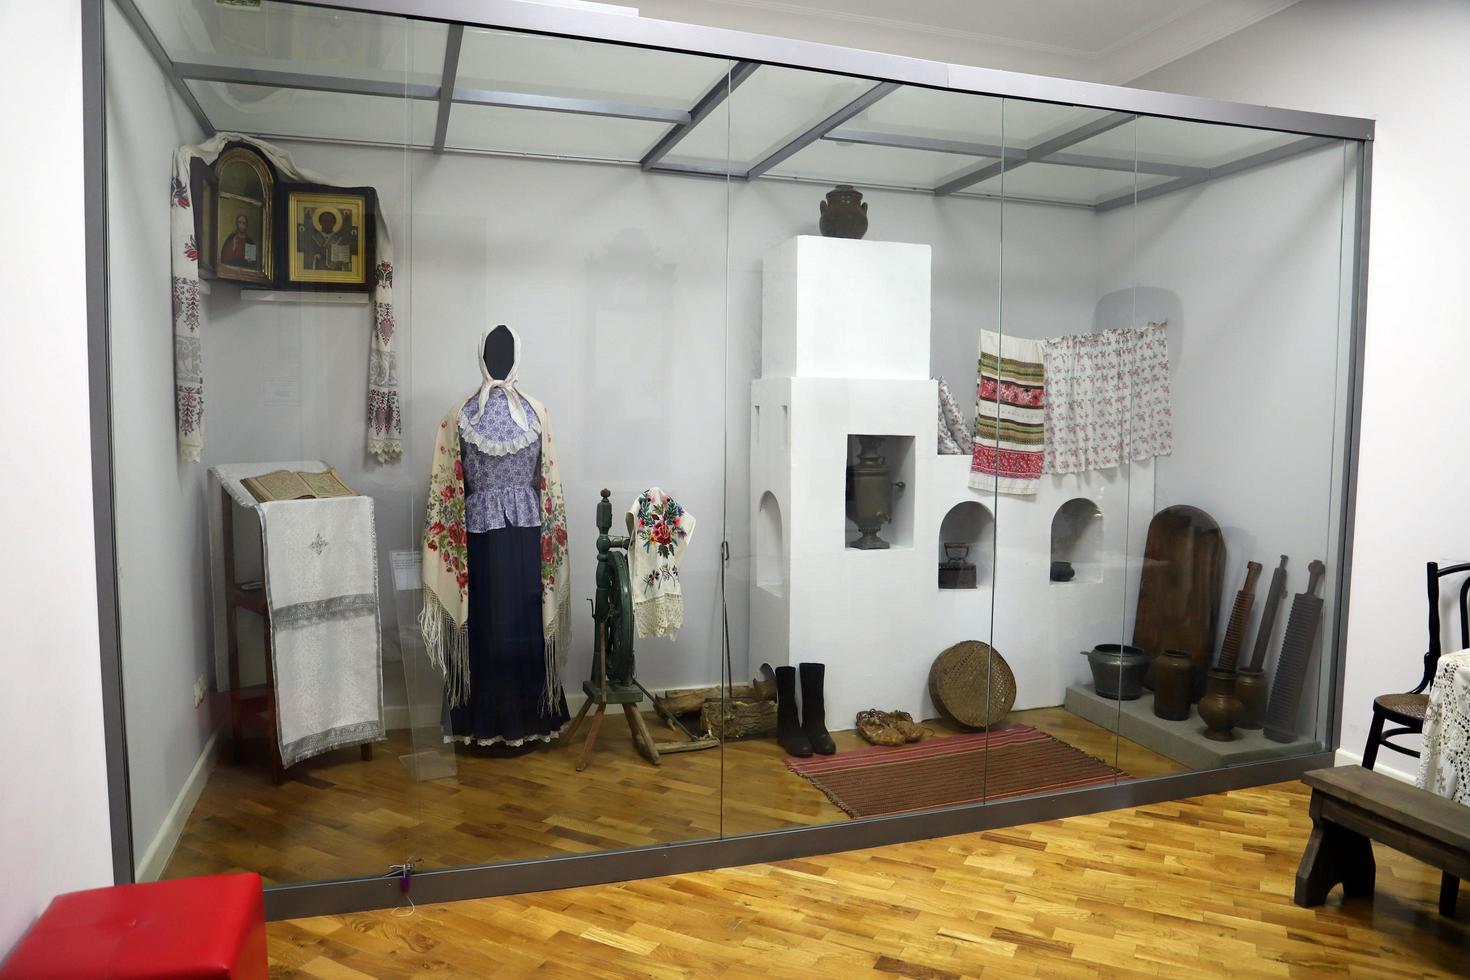 makhachkala, daguestán.rusia.20 de septiembre de 2022.el museo aul de daguestán.el interior de una cabaña tradicional rusa. foto